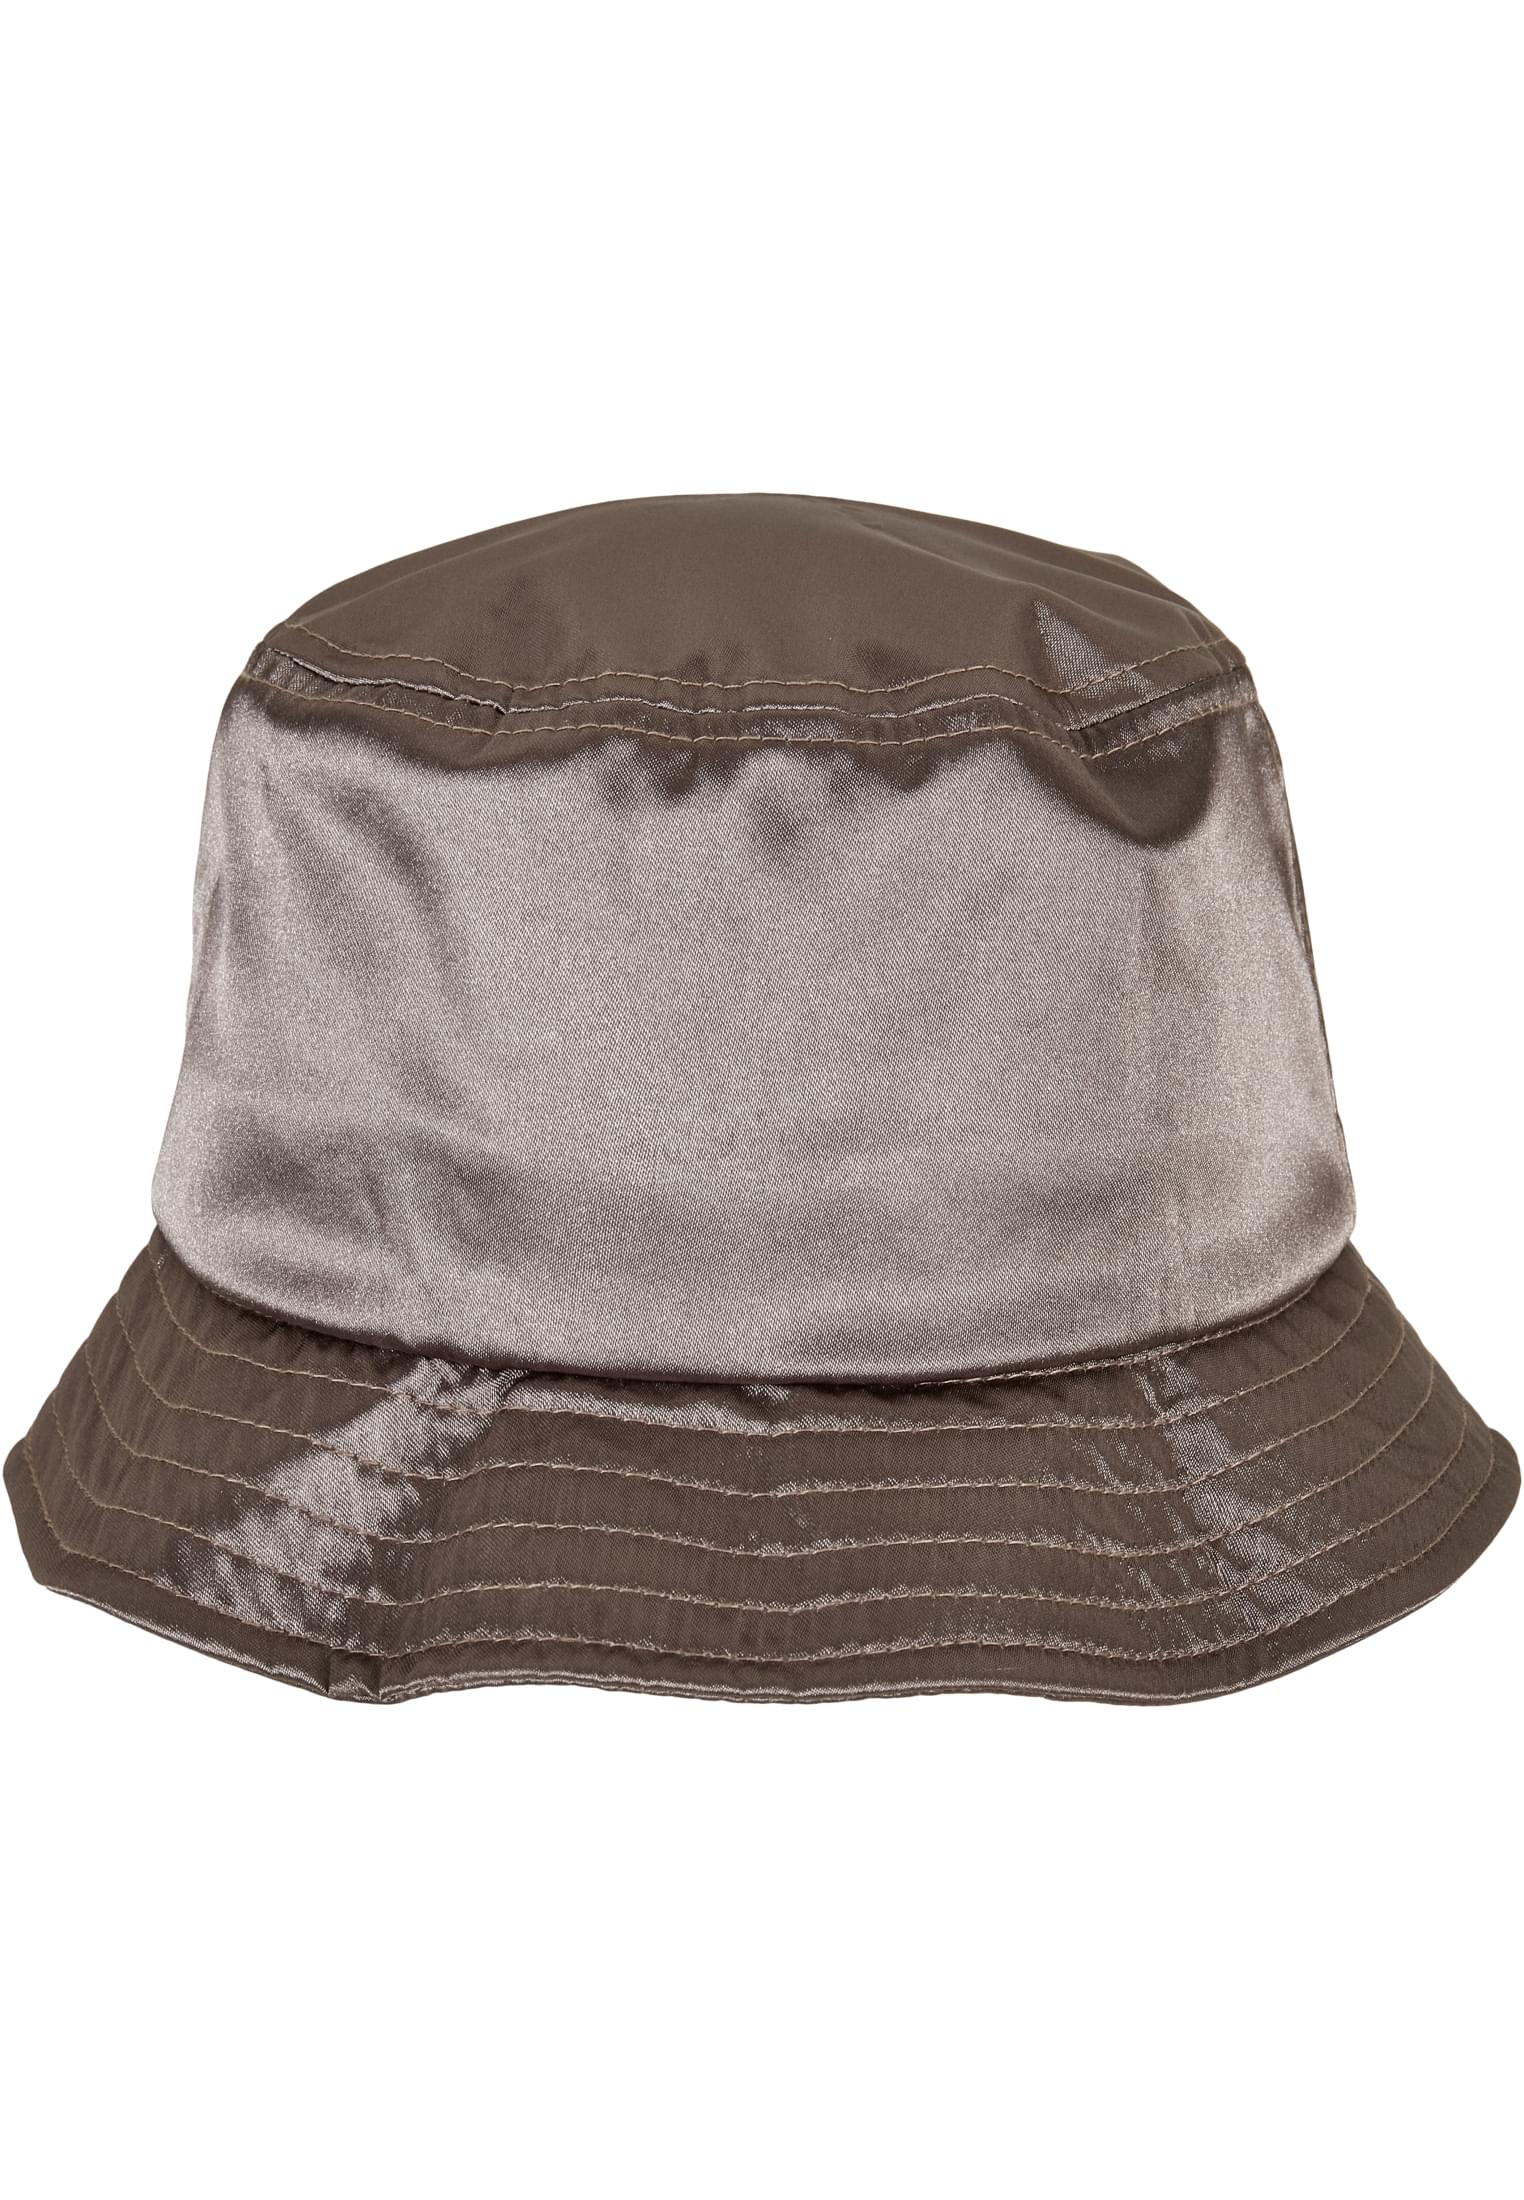 M?tzen Satin Bucket Hat in Farbe darkkhaki